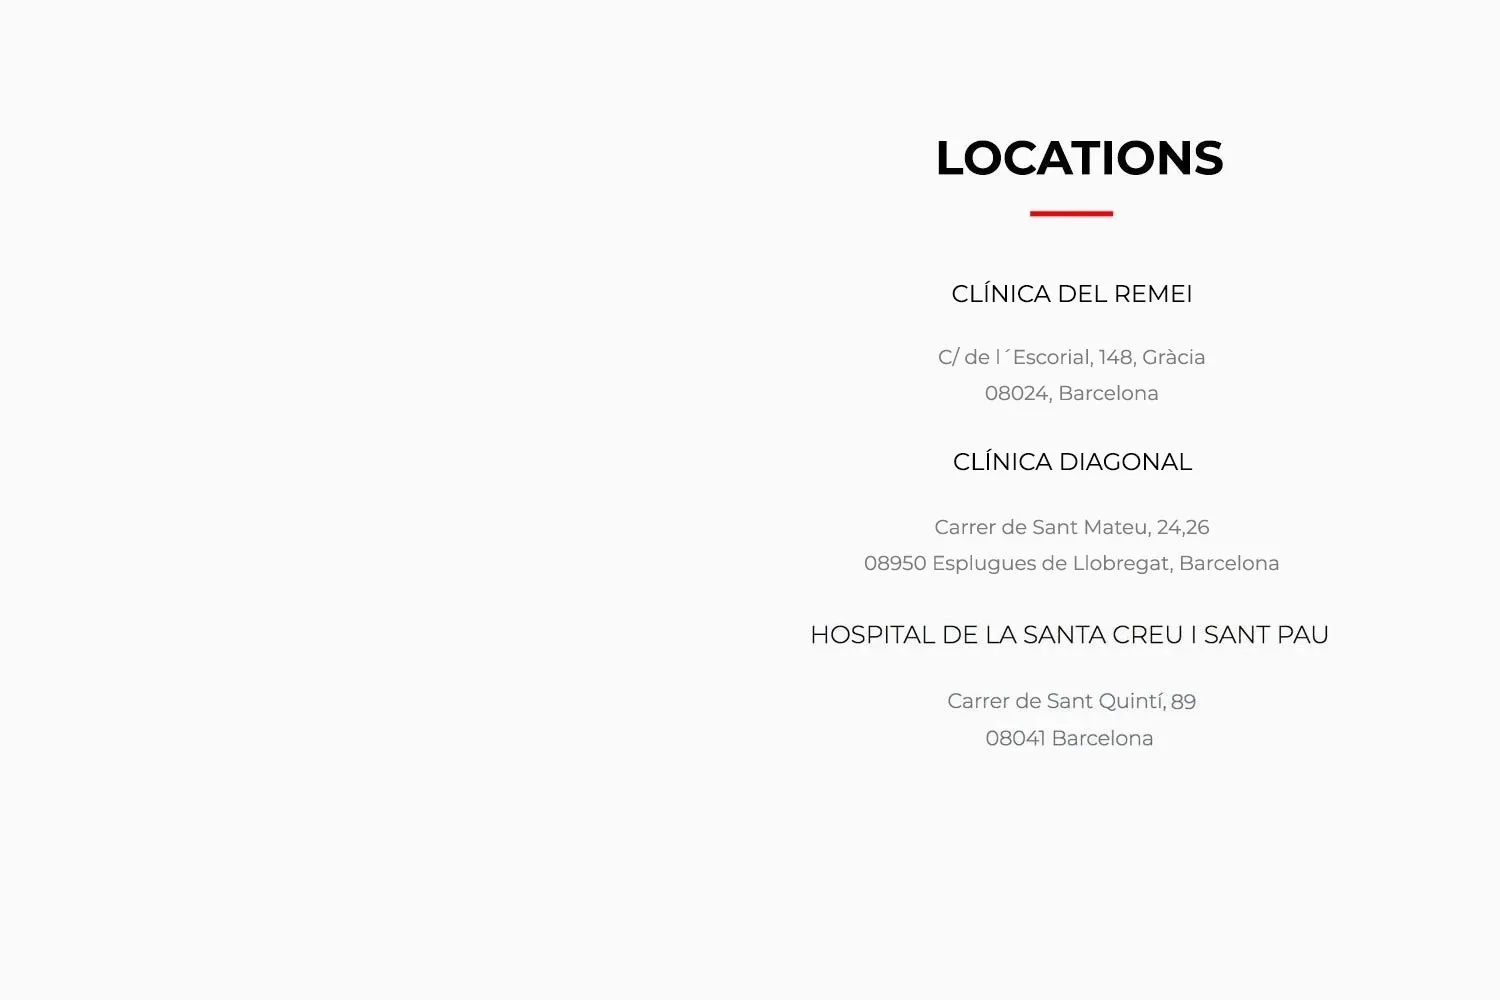 Dr de Quintana Contact see locations